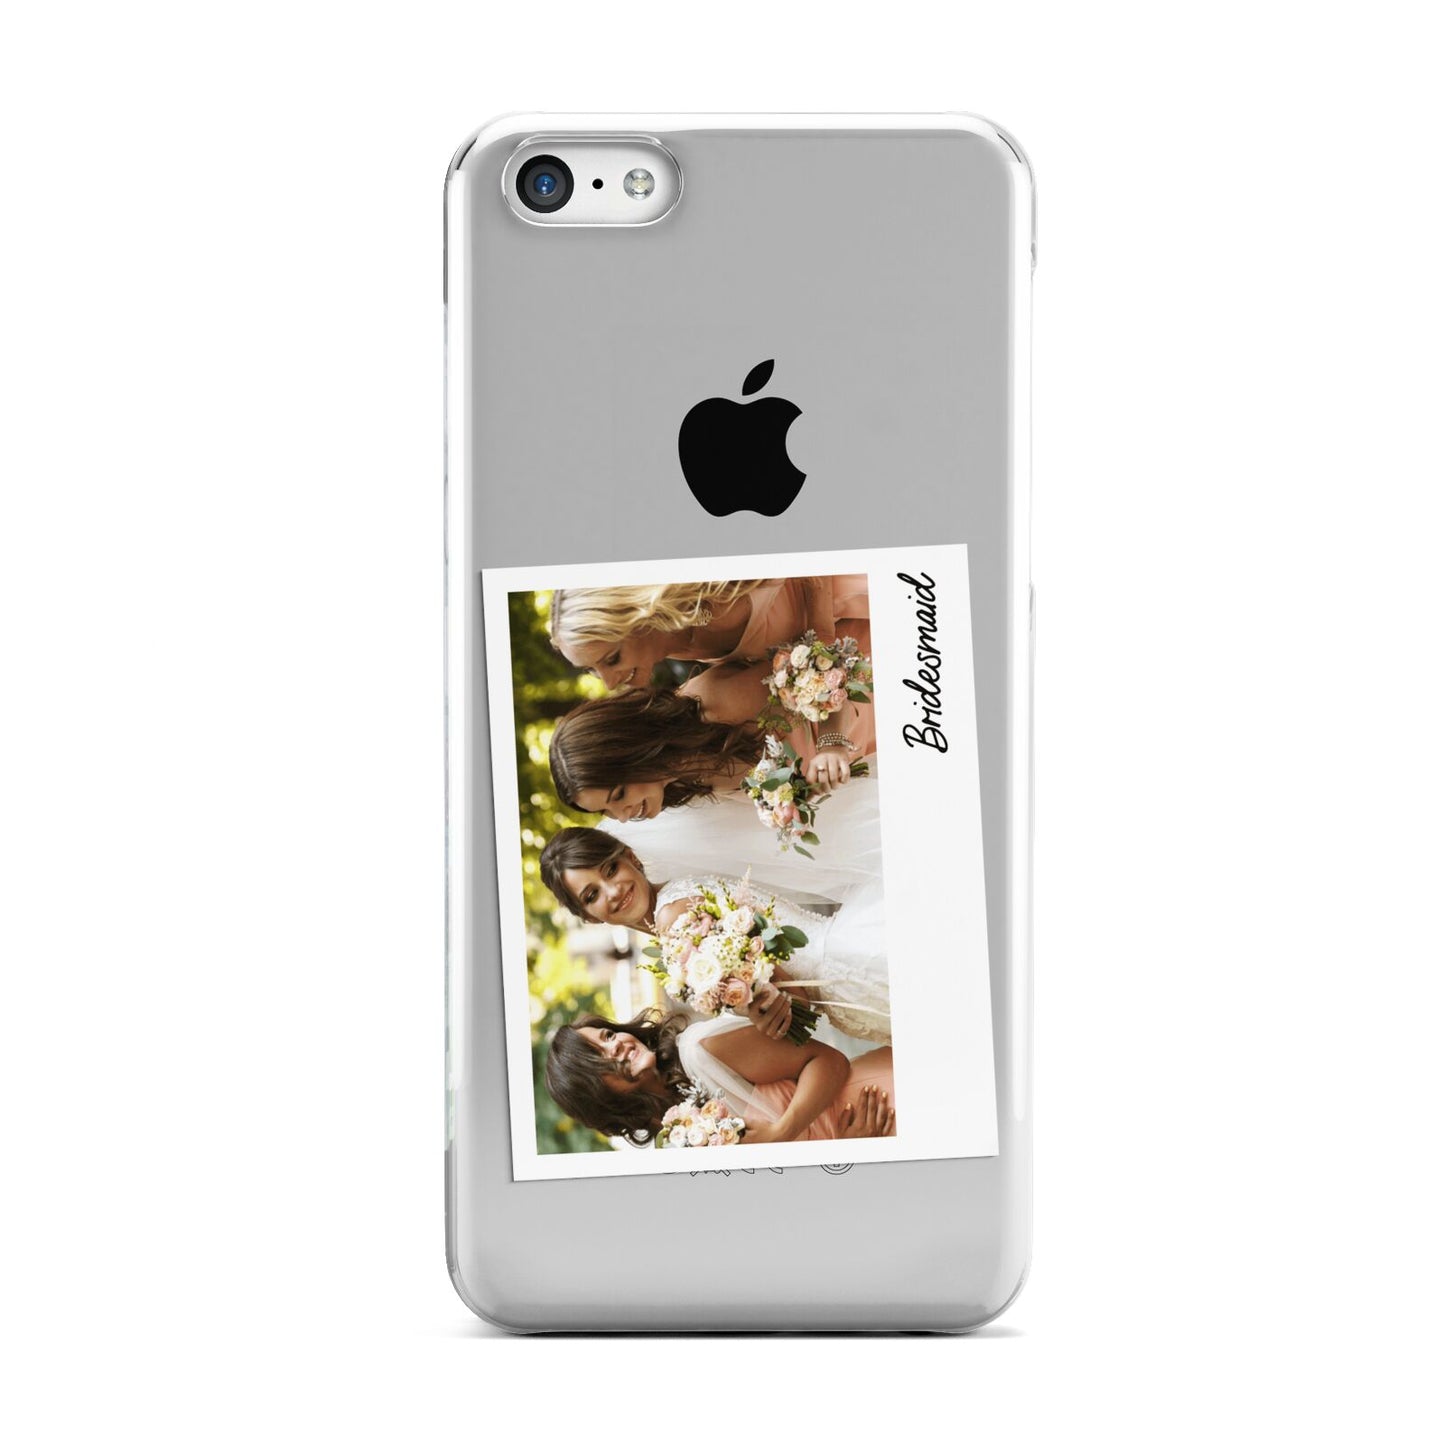 Bridesmaid Photo Apple iPhone 5c Case